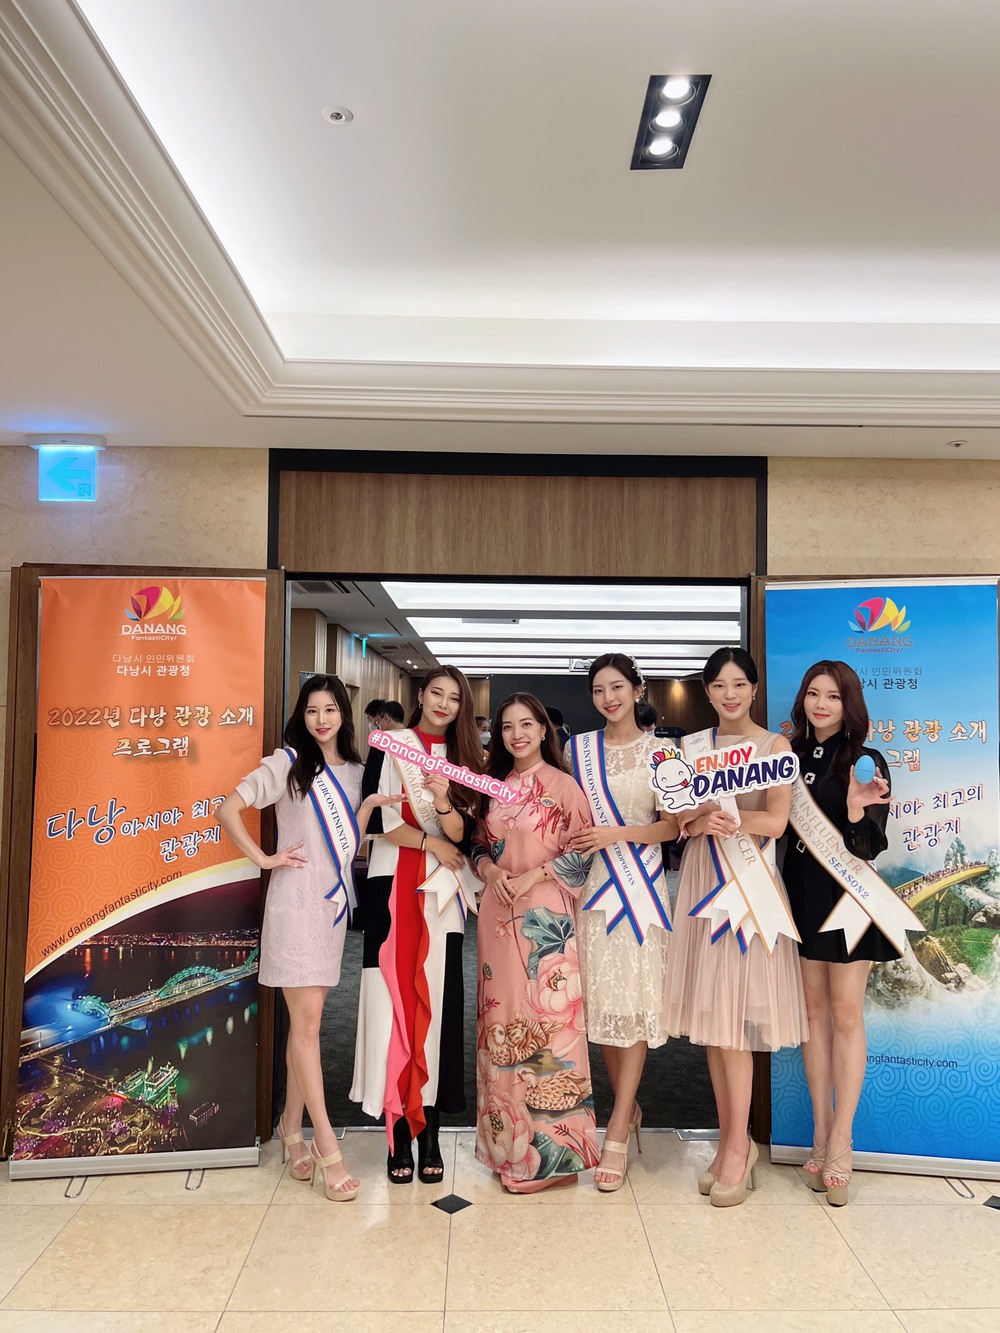 Du lịch Đà Nẵng tăng cường kích cầu, thu hút khách quốc tế - Ảnh 2.